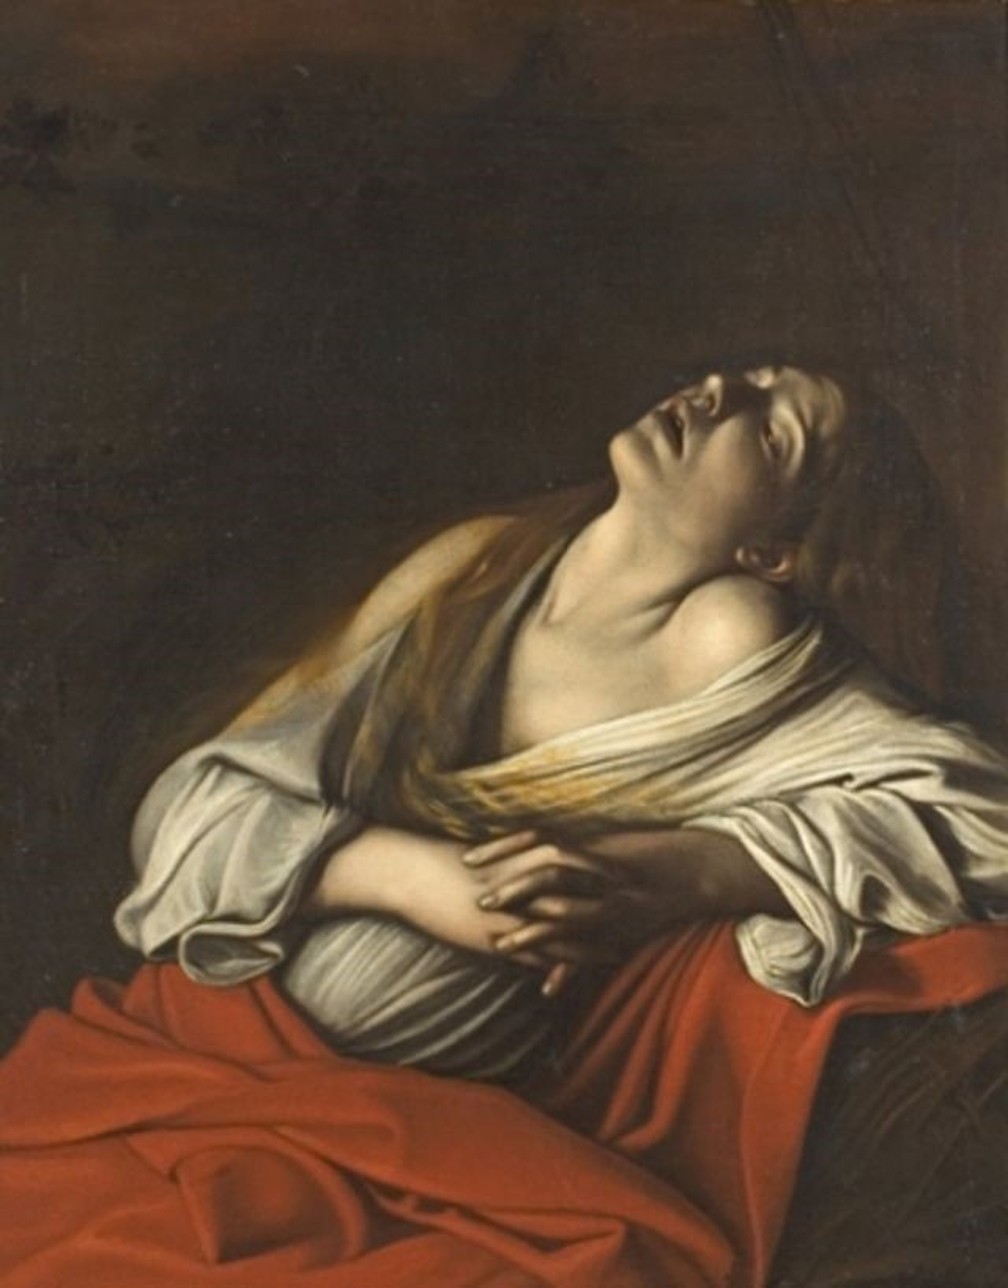 Maria Madalena em êxtase, em obra de Caravaggio do século 17 — Foto: DOMÍNIO PÚBLICO